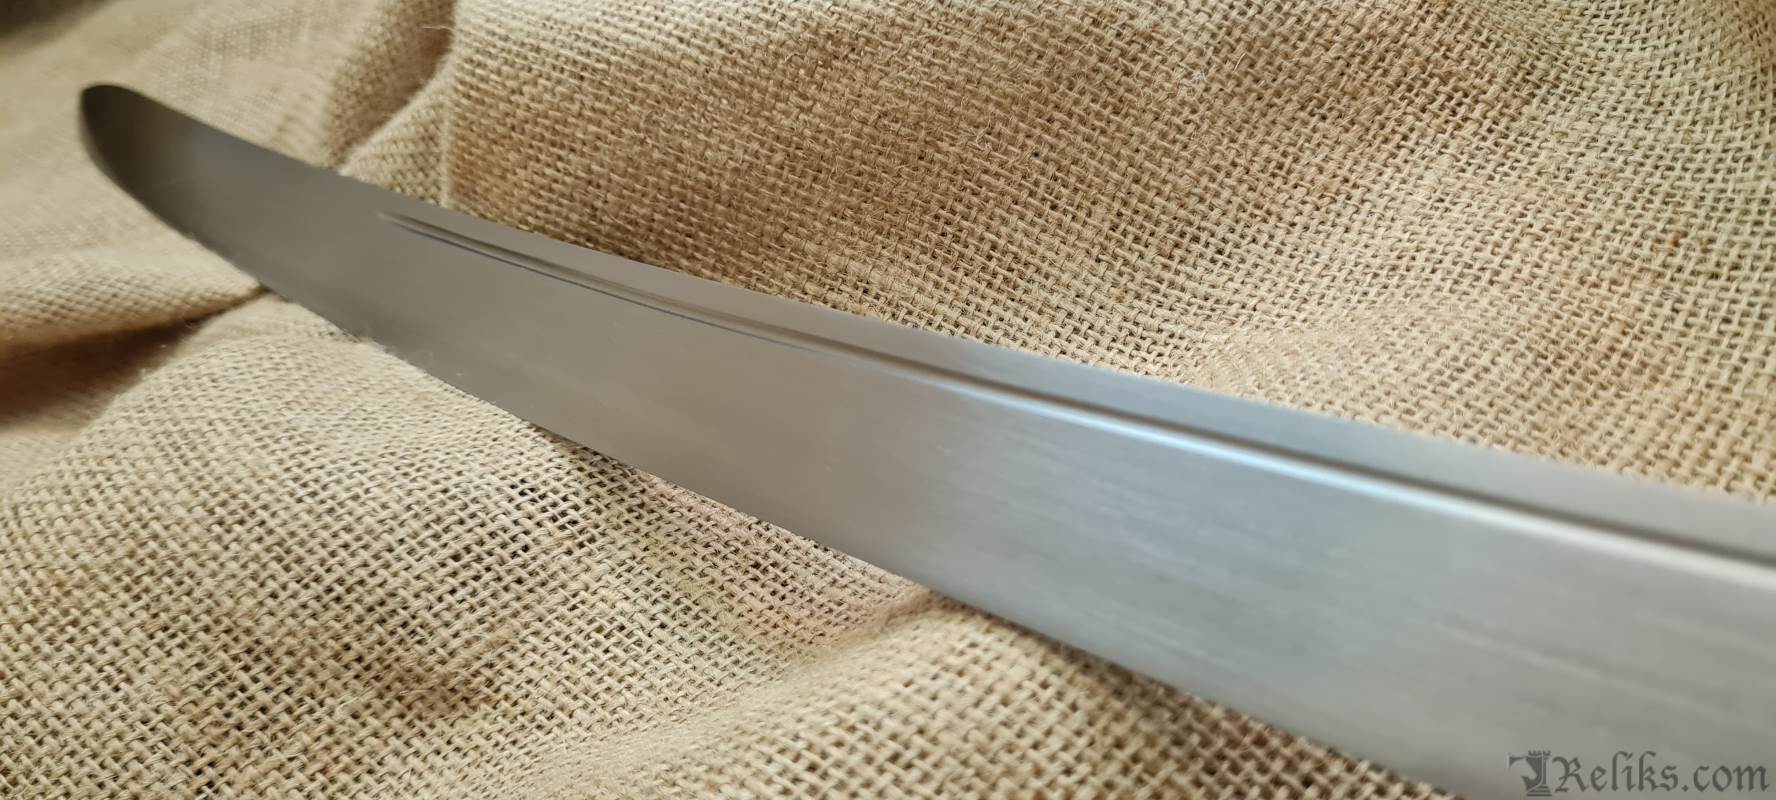 hanger blade